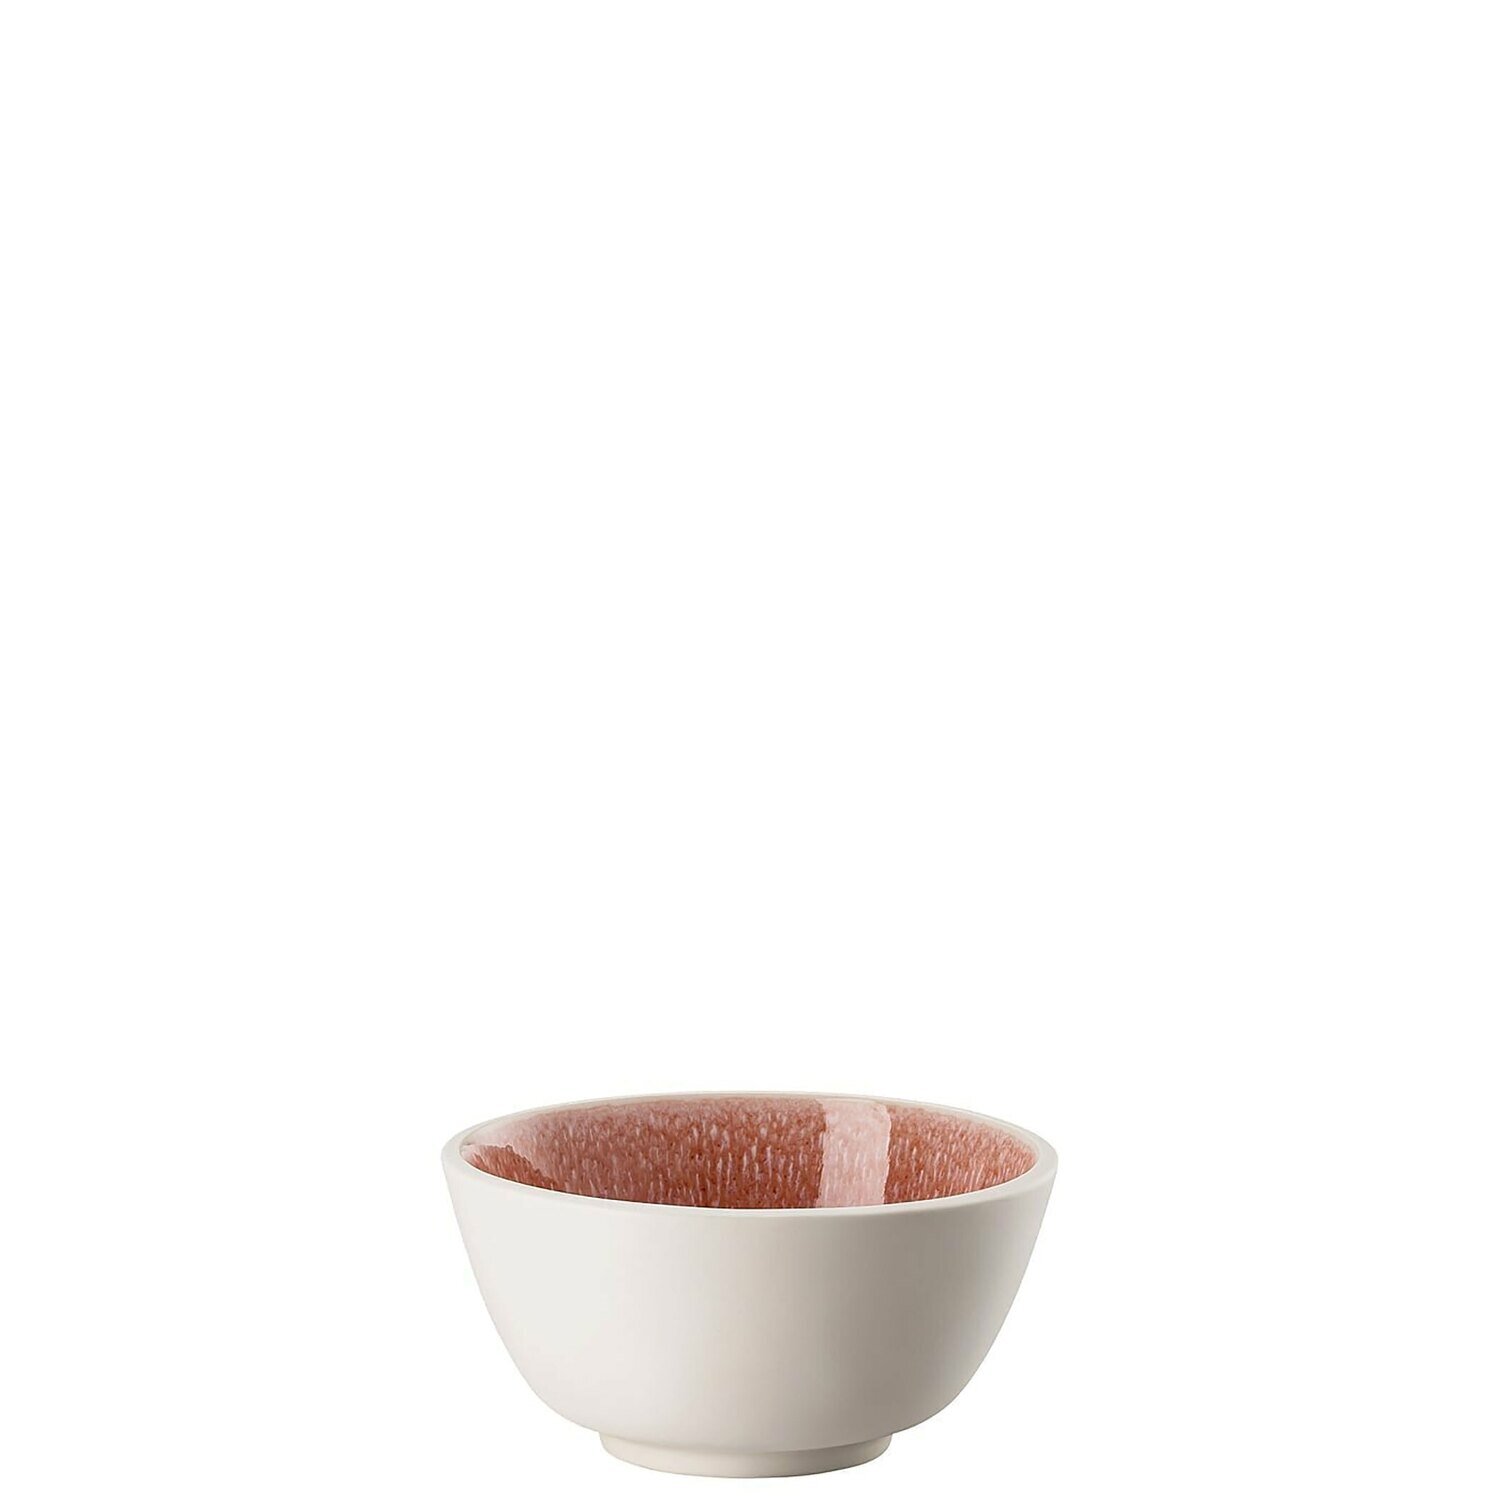 Rosenthal Junto Rose Quartz Stoneware Cereal Bowl 5 1/2 Inch